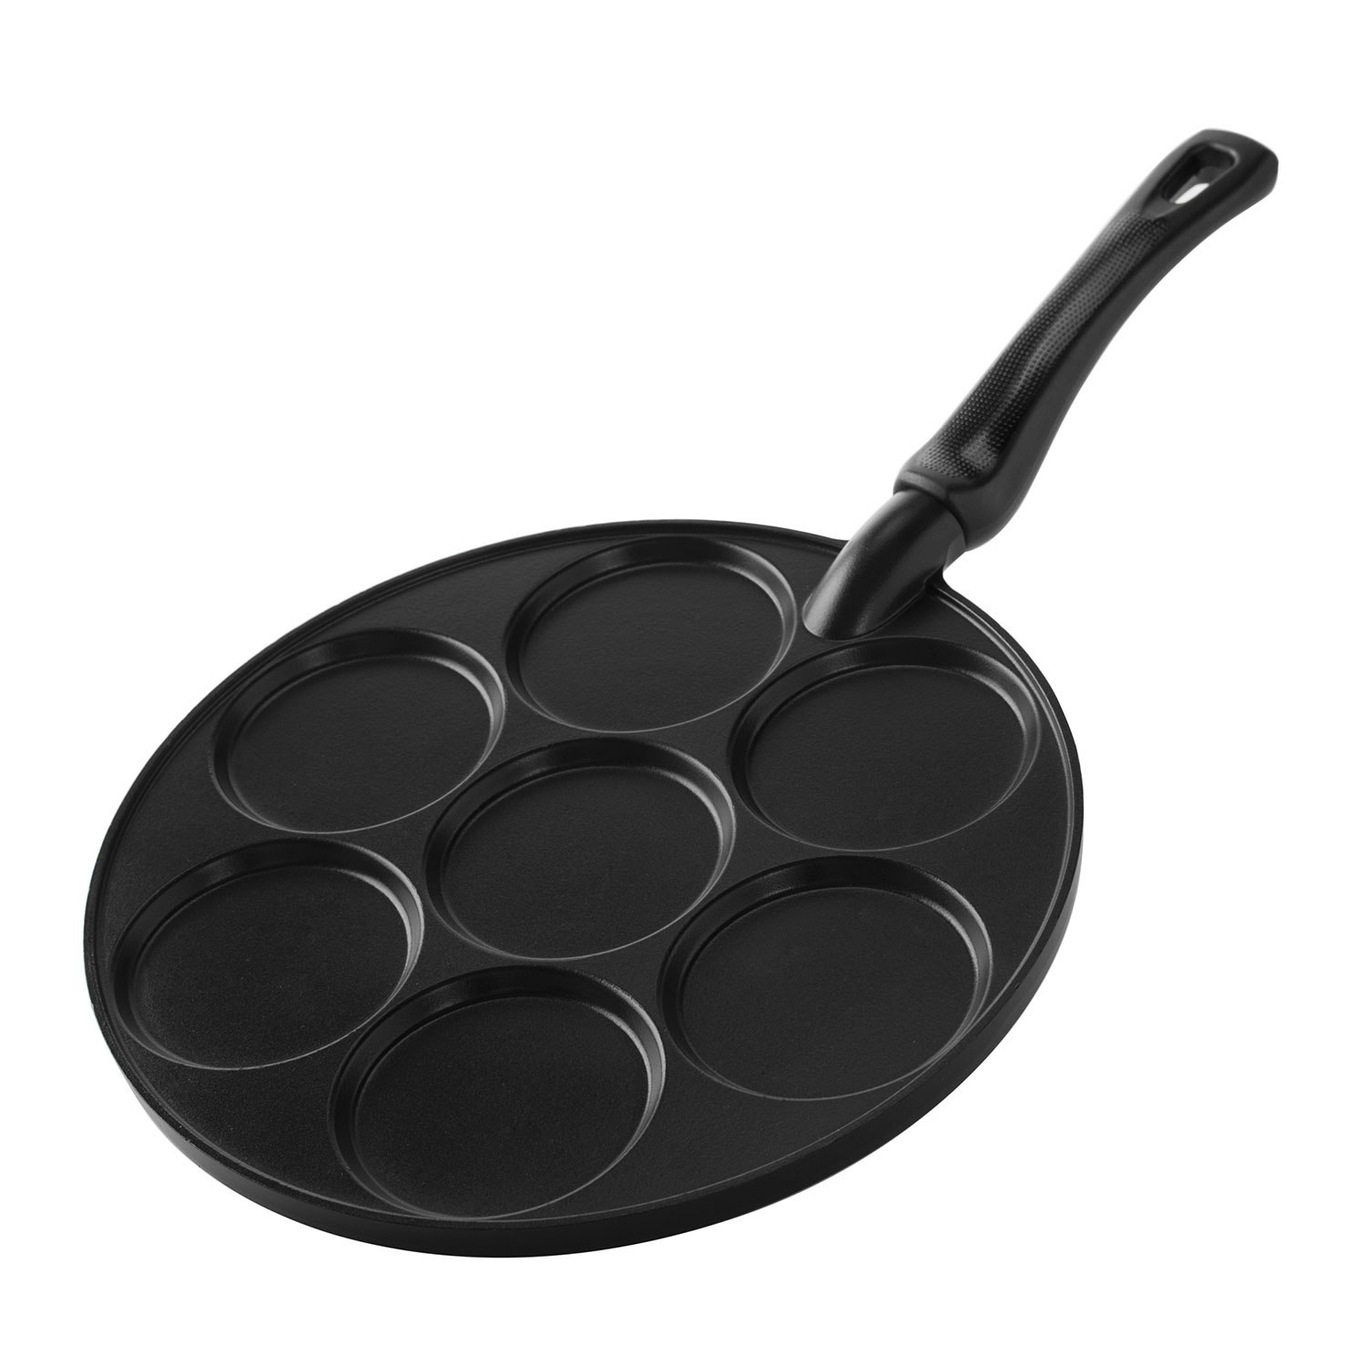 https://royaldesign.com/image/2/nordic-ware-silver-dollar-pancake-pan-0?w=800&quality=80